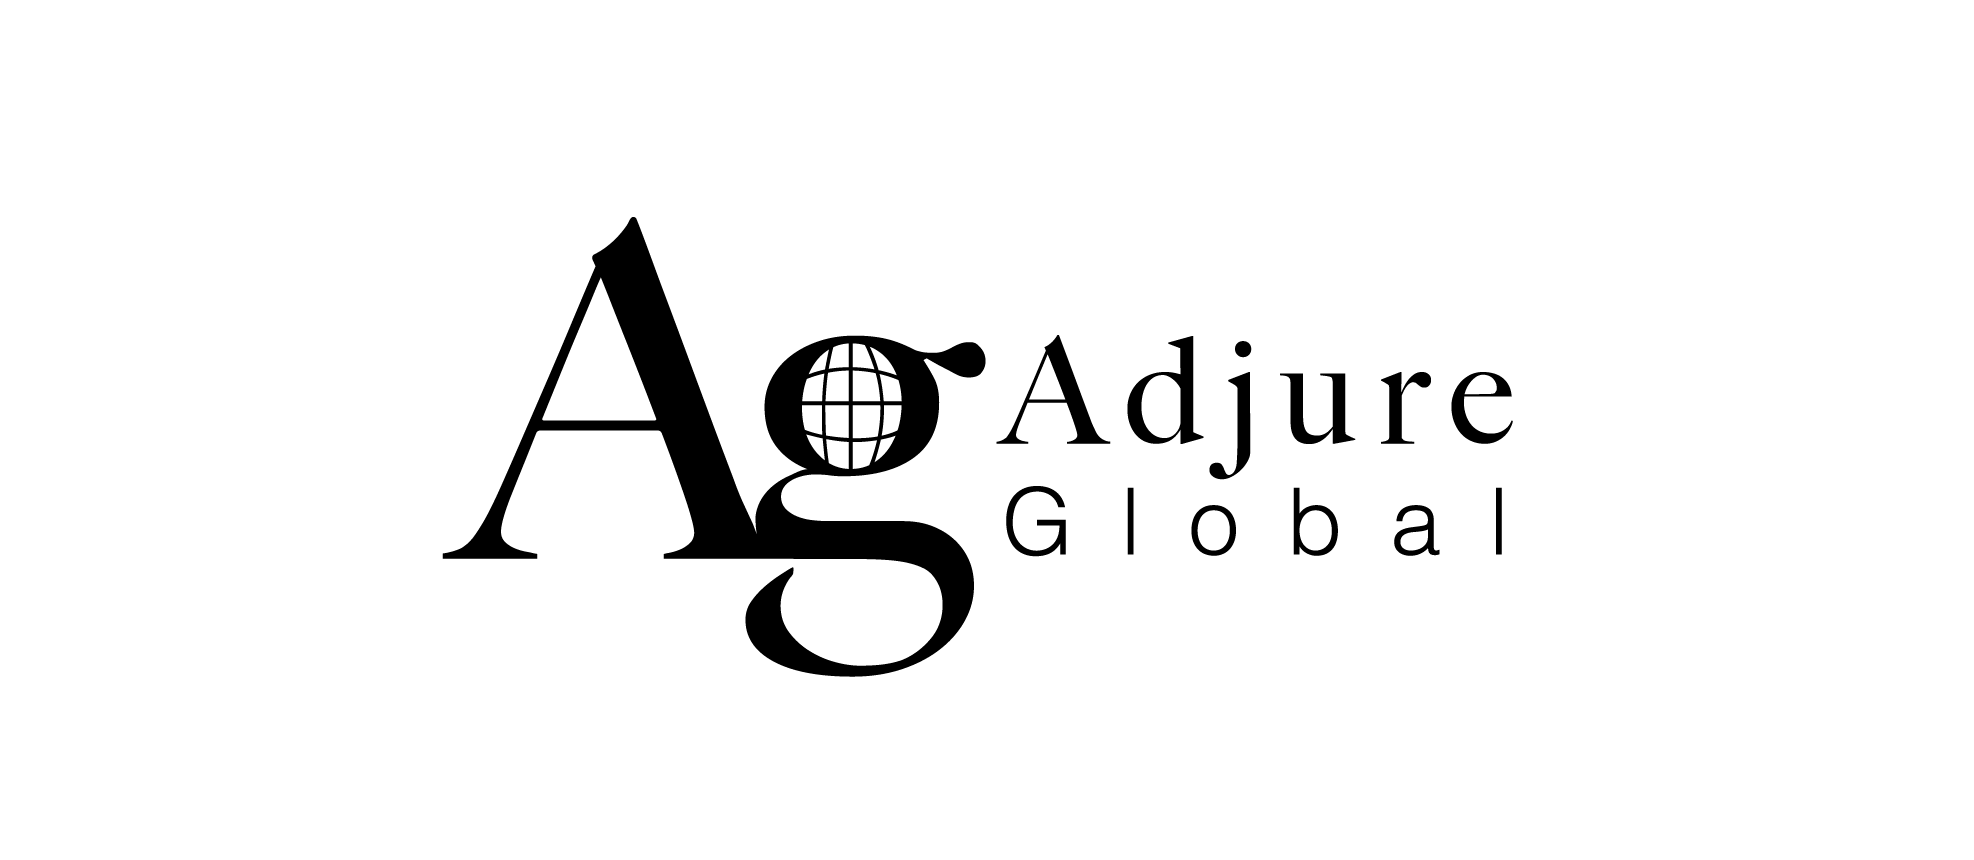 Adjure Global